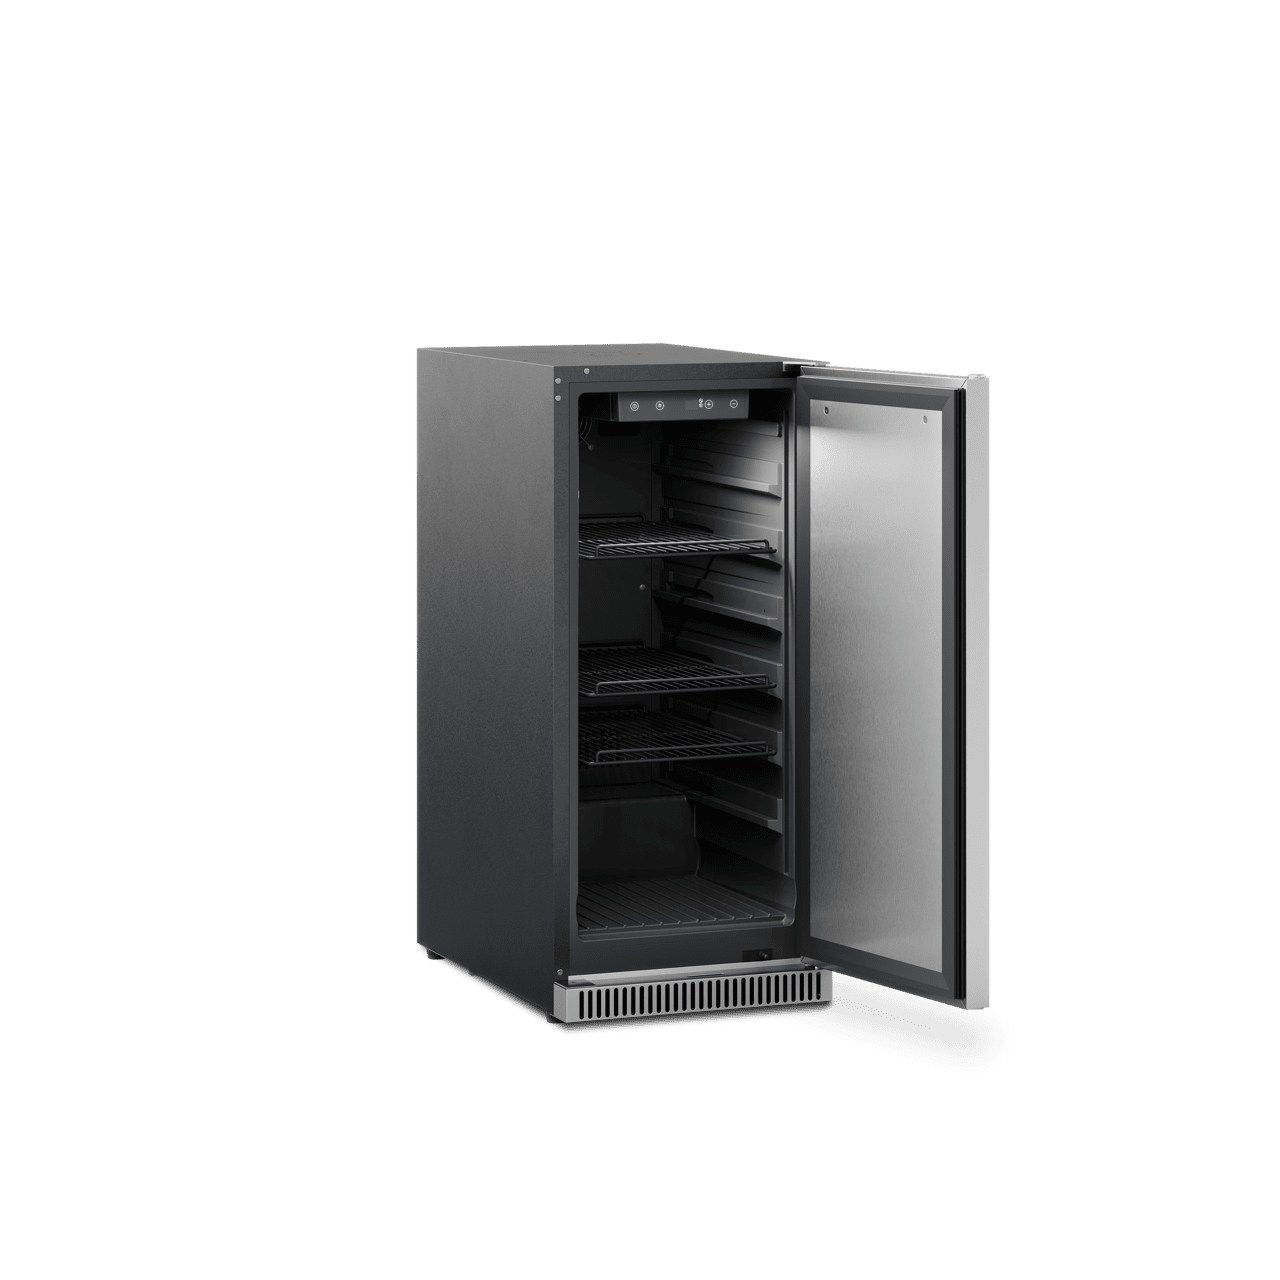 15" Dometic D-Series Refrigerator, Lock, Reversible Hinge